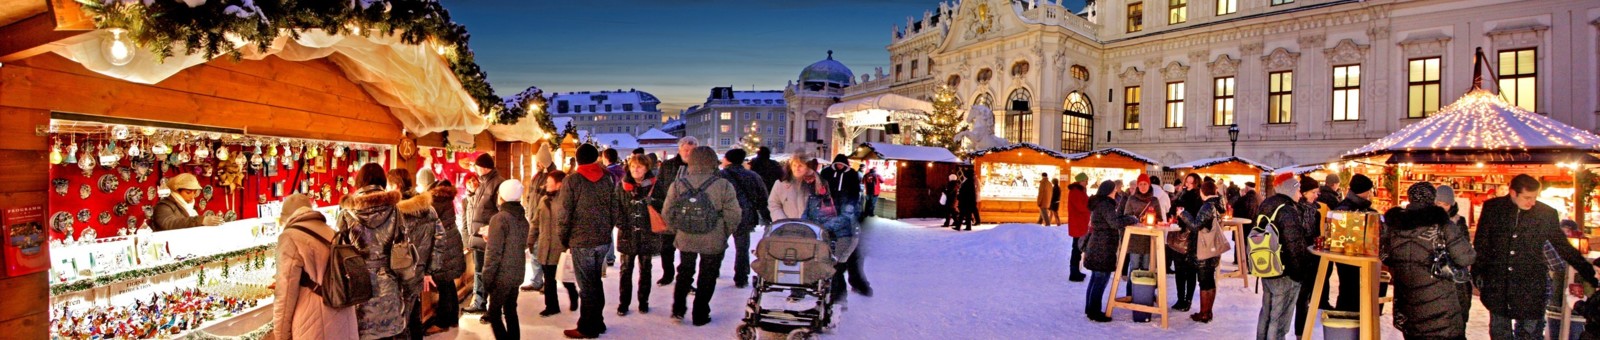     Christmas market at Schloss Belvedere 